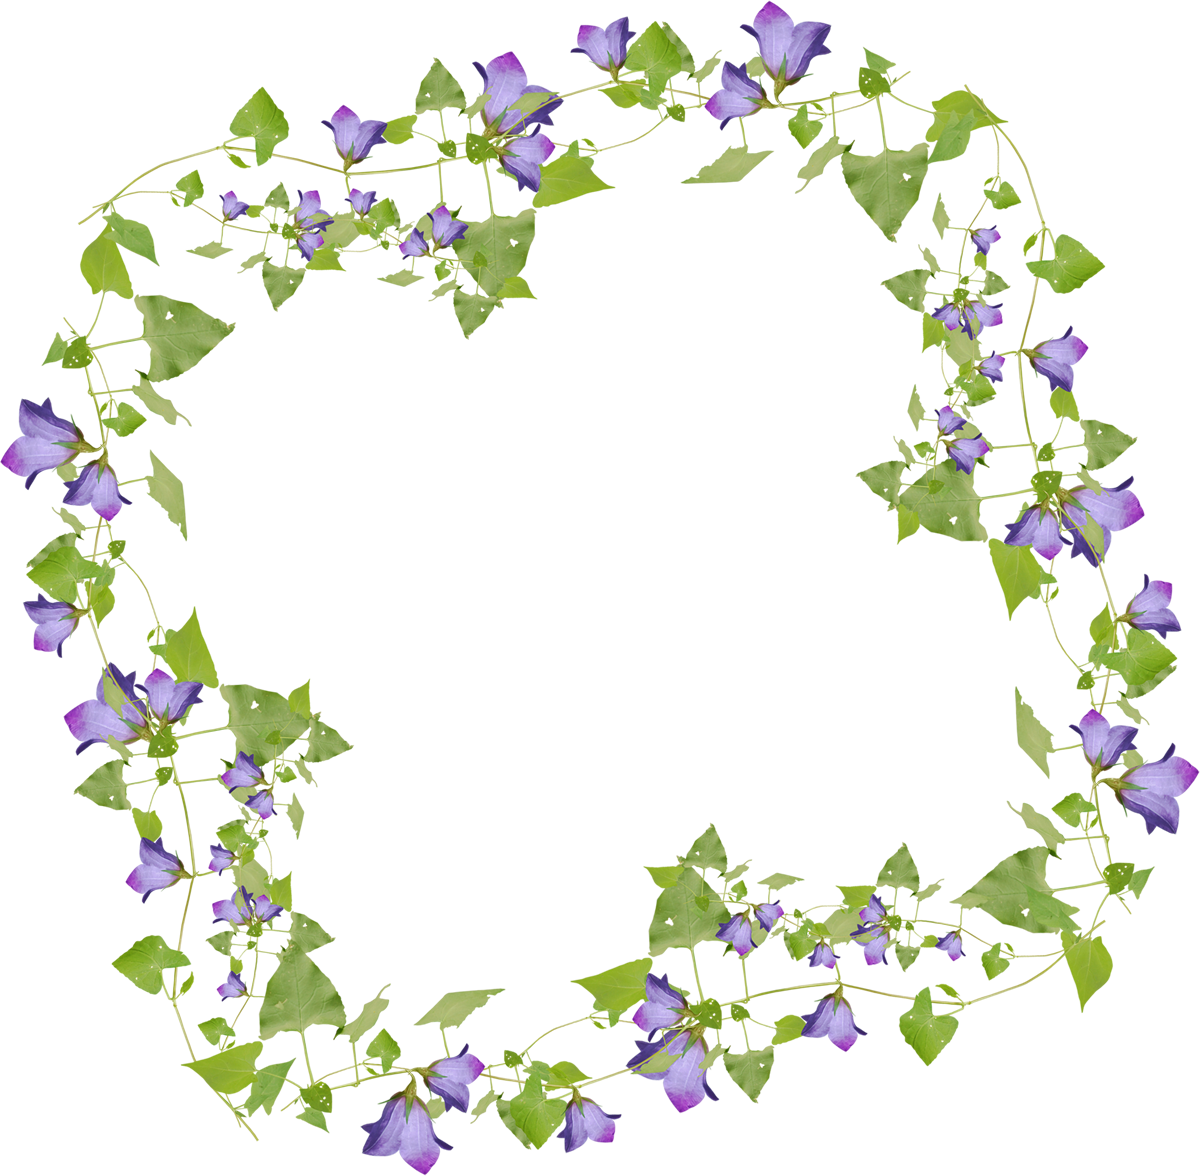 花や葉の写真 画像 フリー素材 フレーム枠no 1005 群青 茎葉 つる